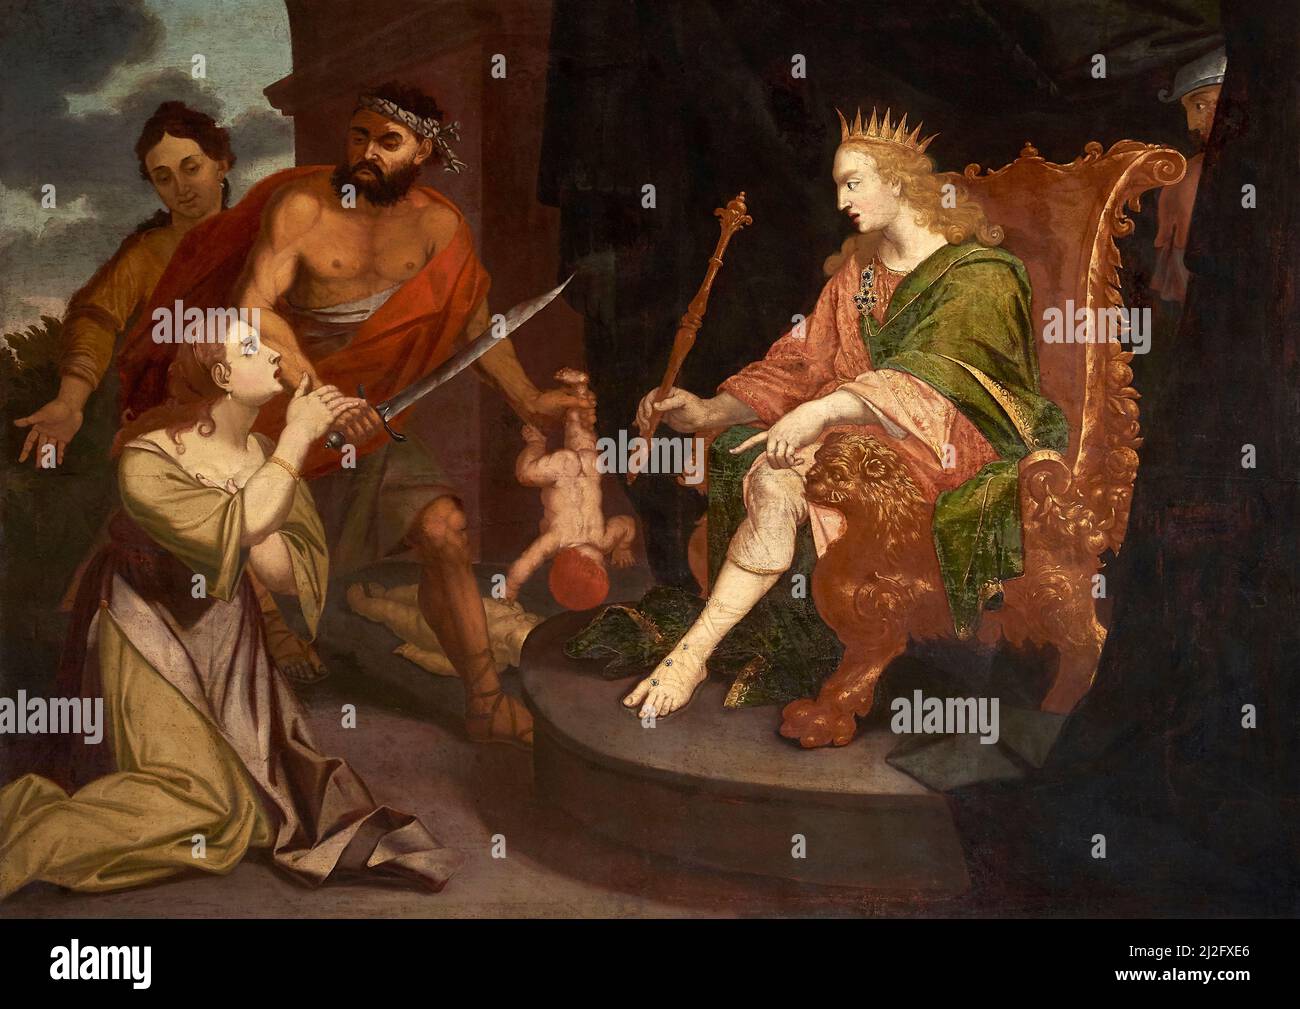 Jugement de Salomon - huile sur toile - peintre emilien de la première  moitié du 16th siècle - Piacenza, Italie, église St.Antonino Photo Stock -  Alamy